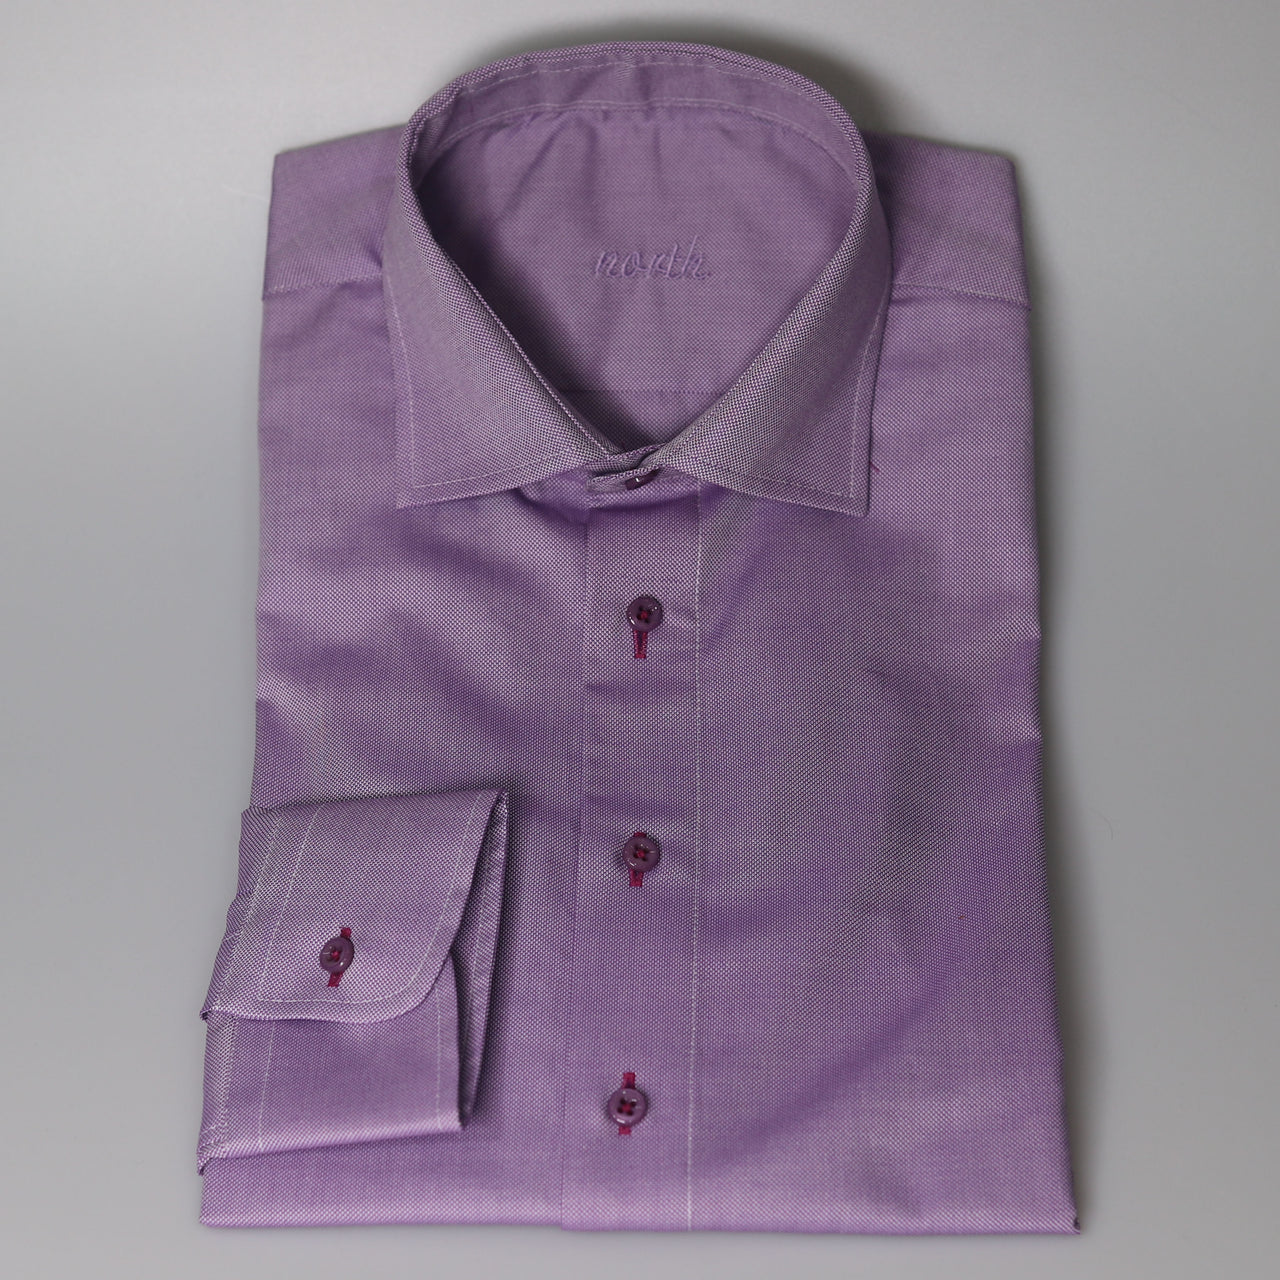 North Violet Pin Prick Shirt